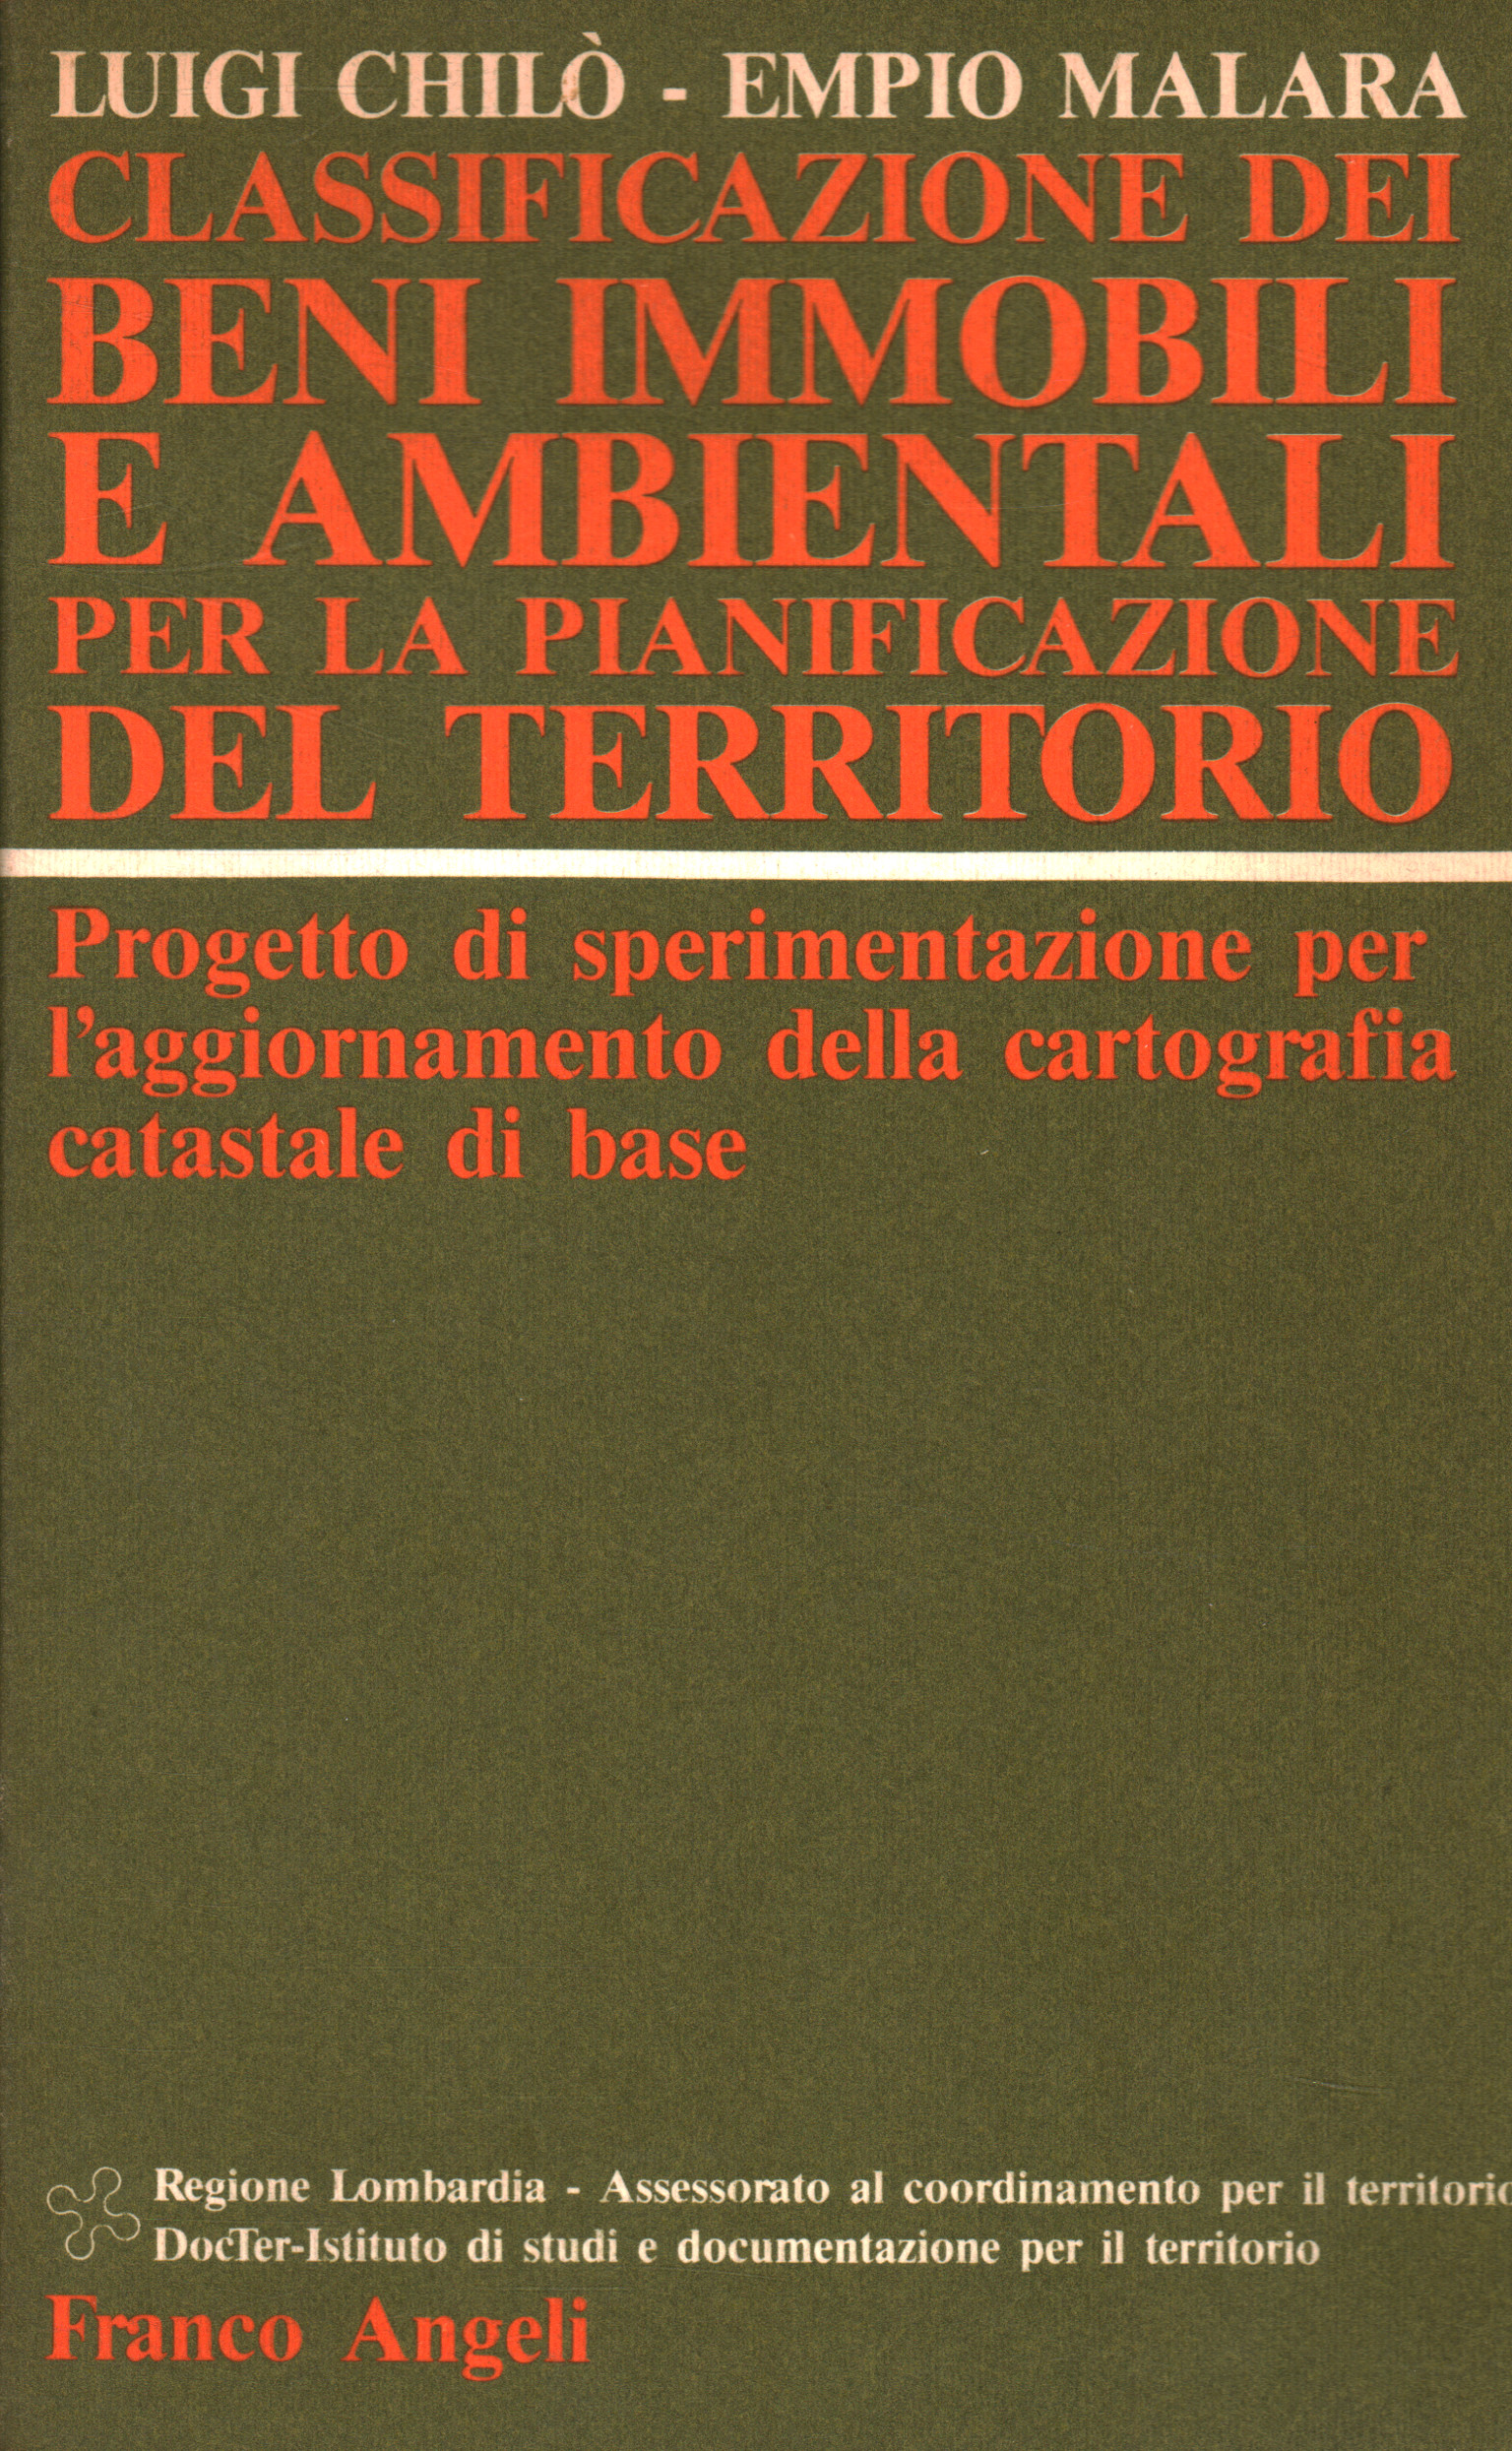 Classification des actifs immobiliers et environnementaux pour Luigi Chiò Empio Malara